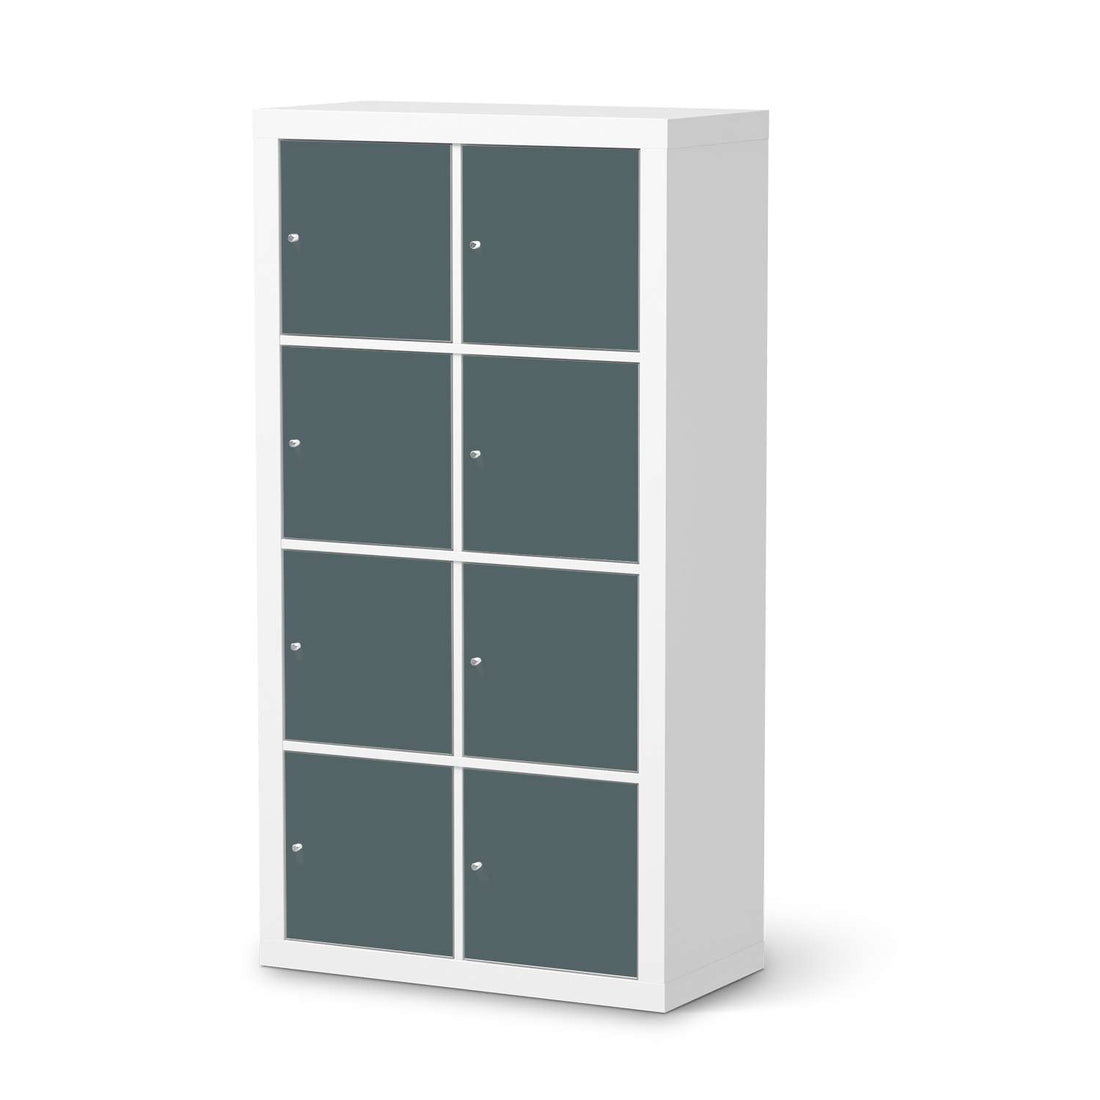 Folie für Möbel Blaugrau Light - IKEA Kallax Regal 8 Türen  - weiss